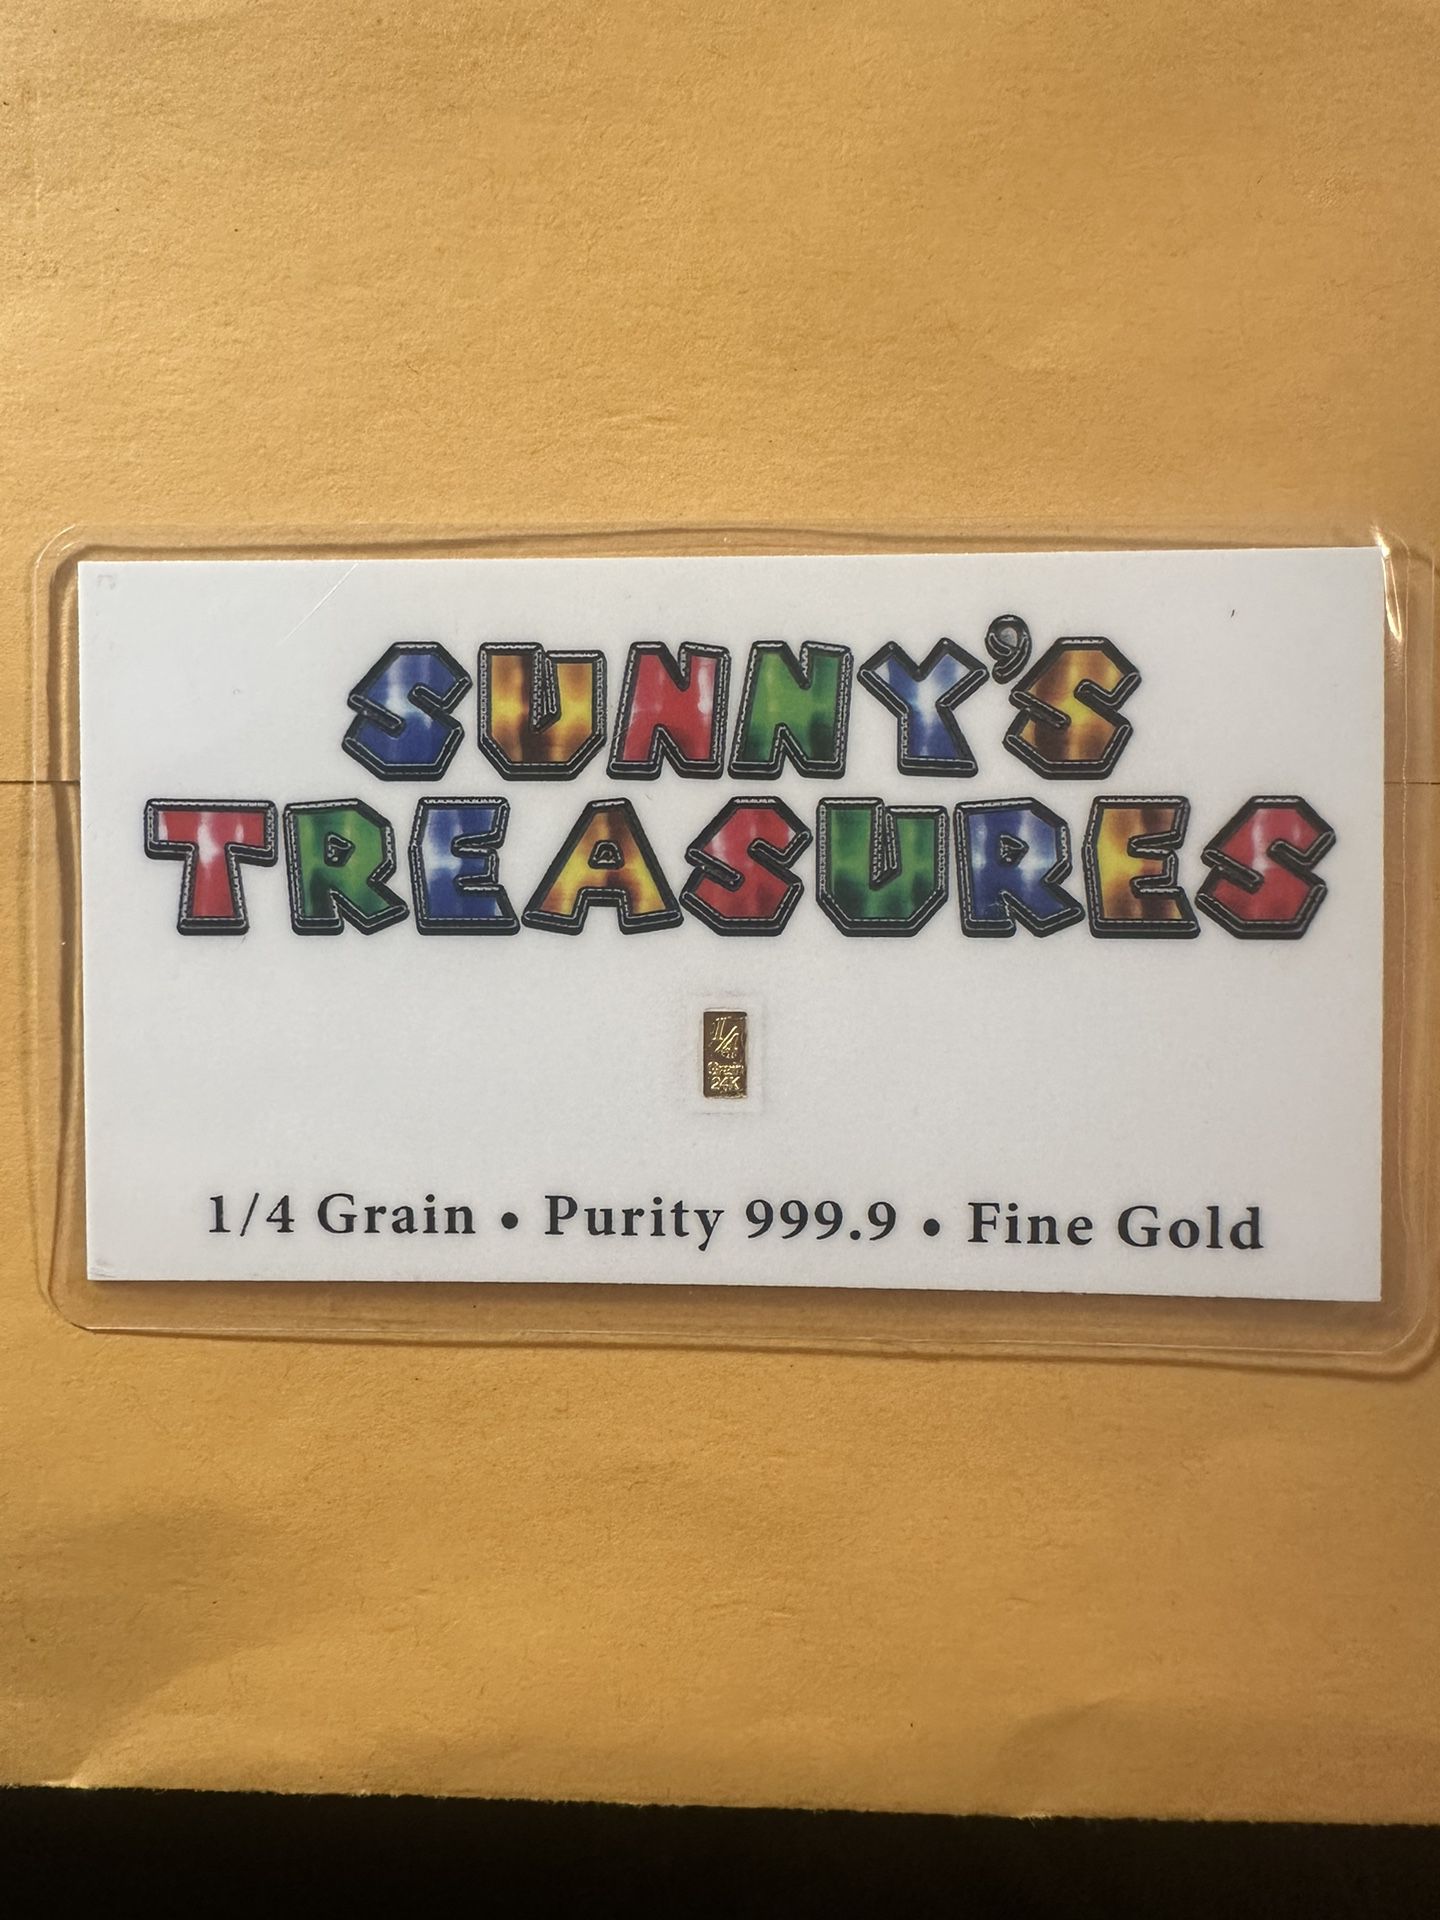 Sunny’s Treasures 1/4 Grain Gold